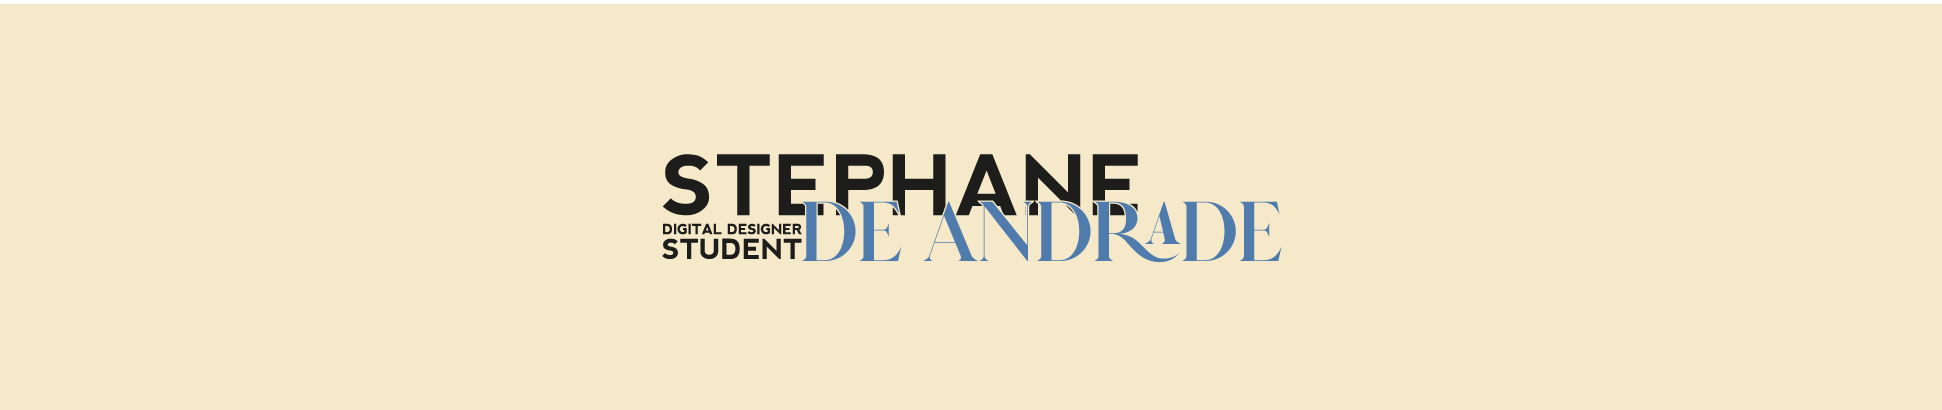 Stéphane De Andrade's profile banner